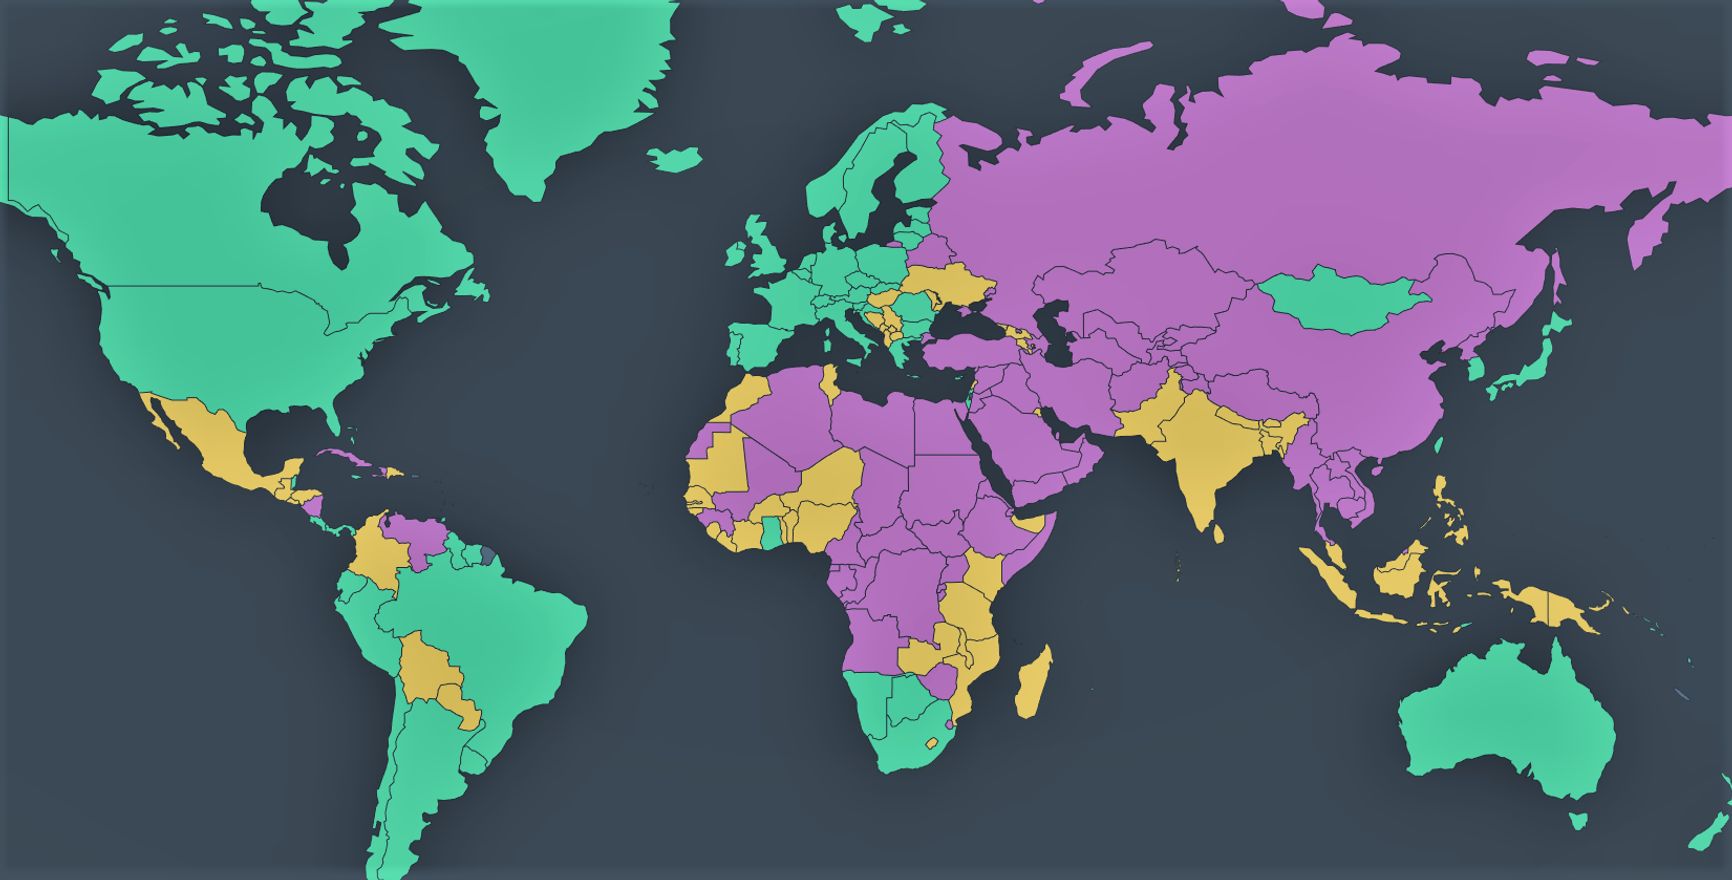 Карта глобальных свобод по версии Freedom House. Зеленые режимы считаются свободными, желтые — частично свободными, малиновые — несвободными. Монголия окружена авторитарными режимами